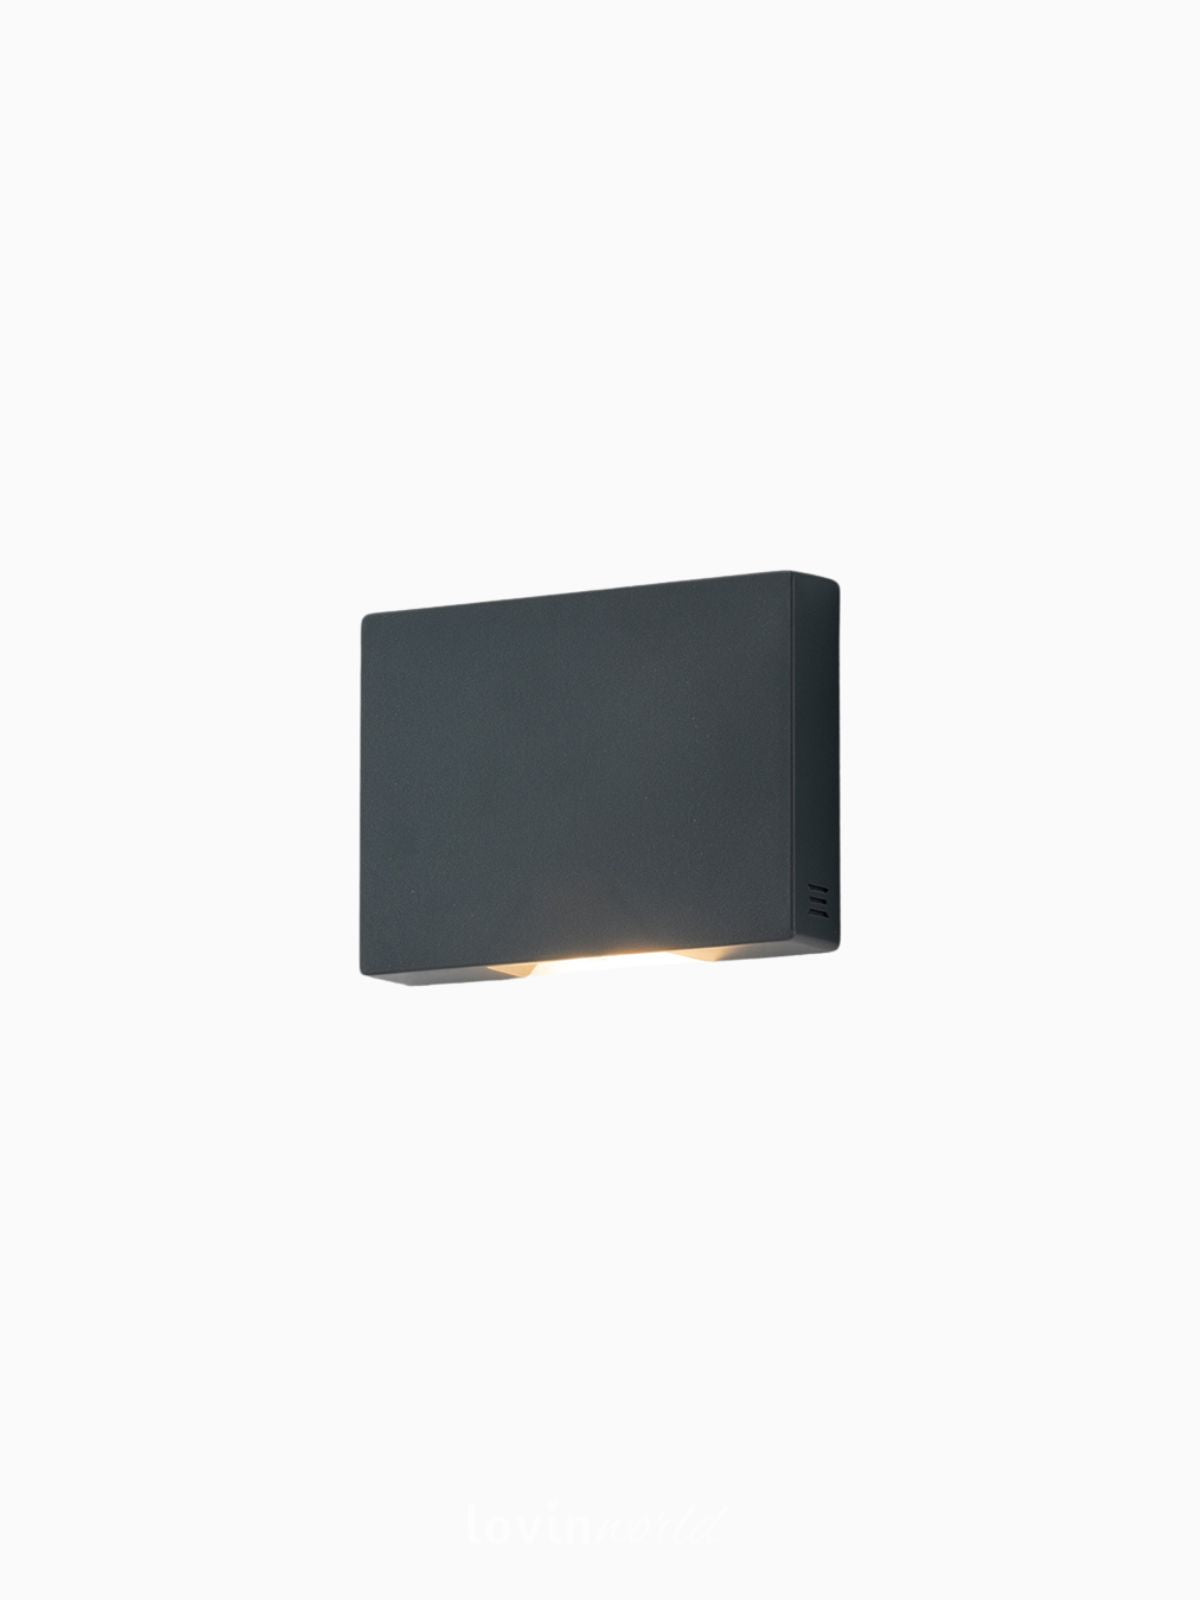 Segnapassi da esterno LED Steplight in termoplastica, colore nero-1